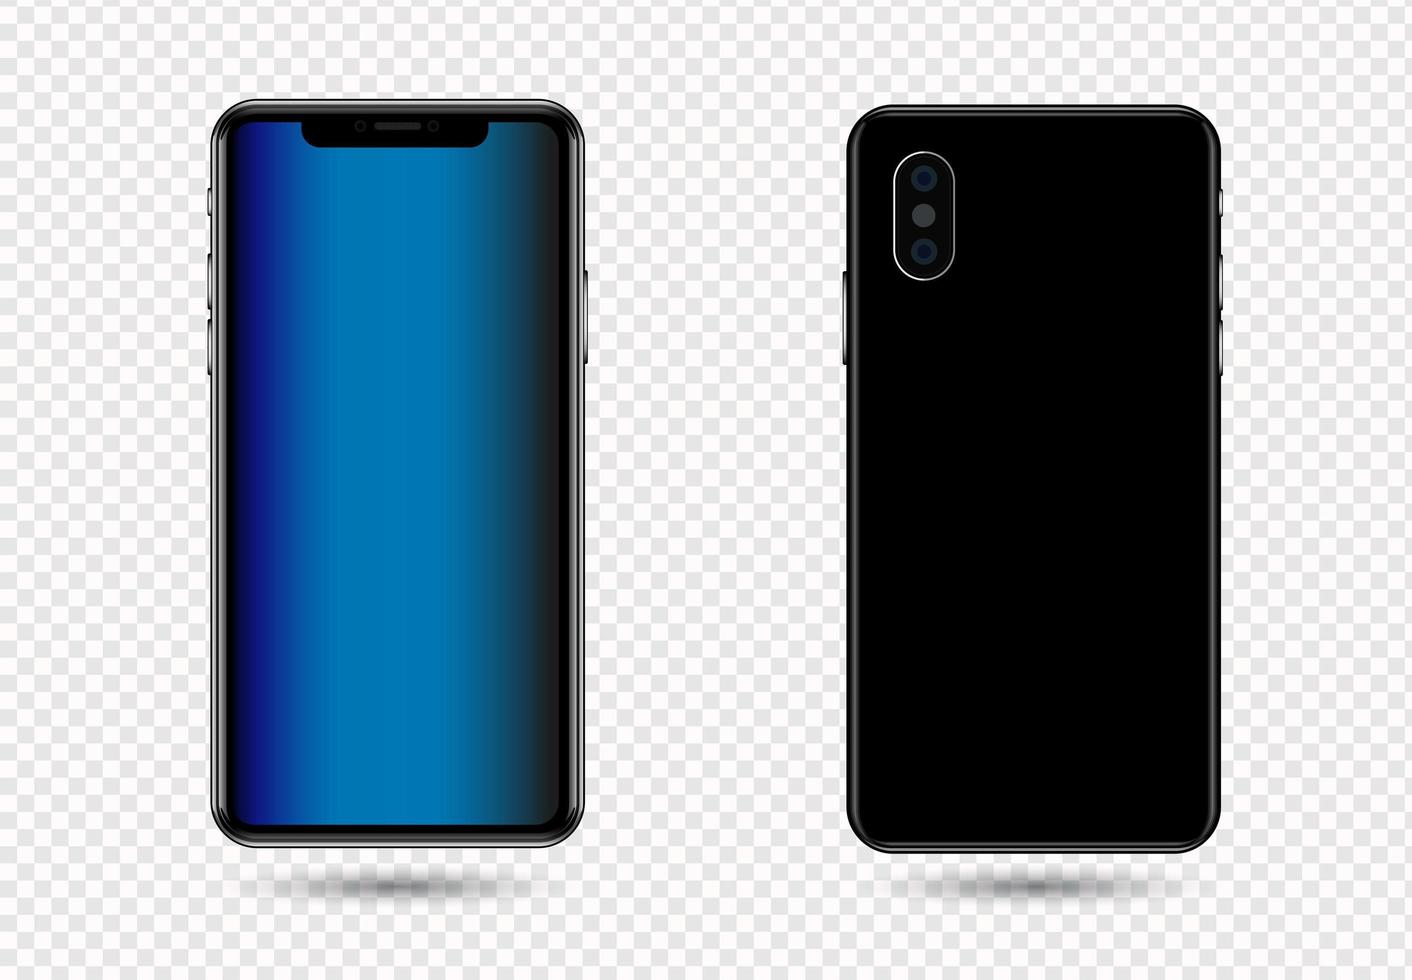 telefone móvel de mockup.3d smartphone realista com tela azul em branco, modelo em fundo transparente. vetor